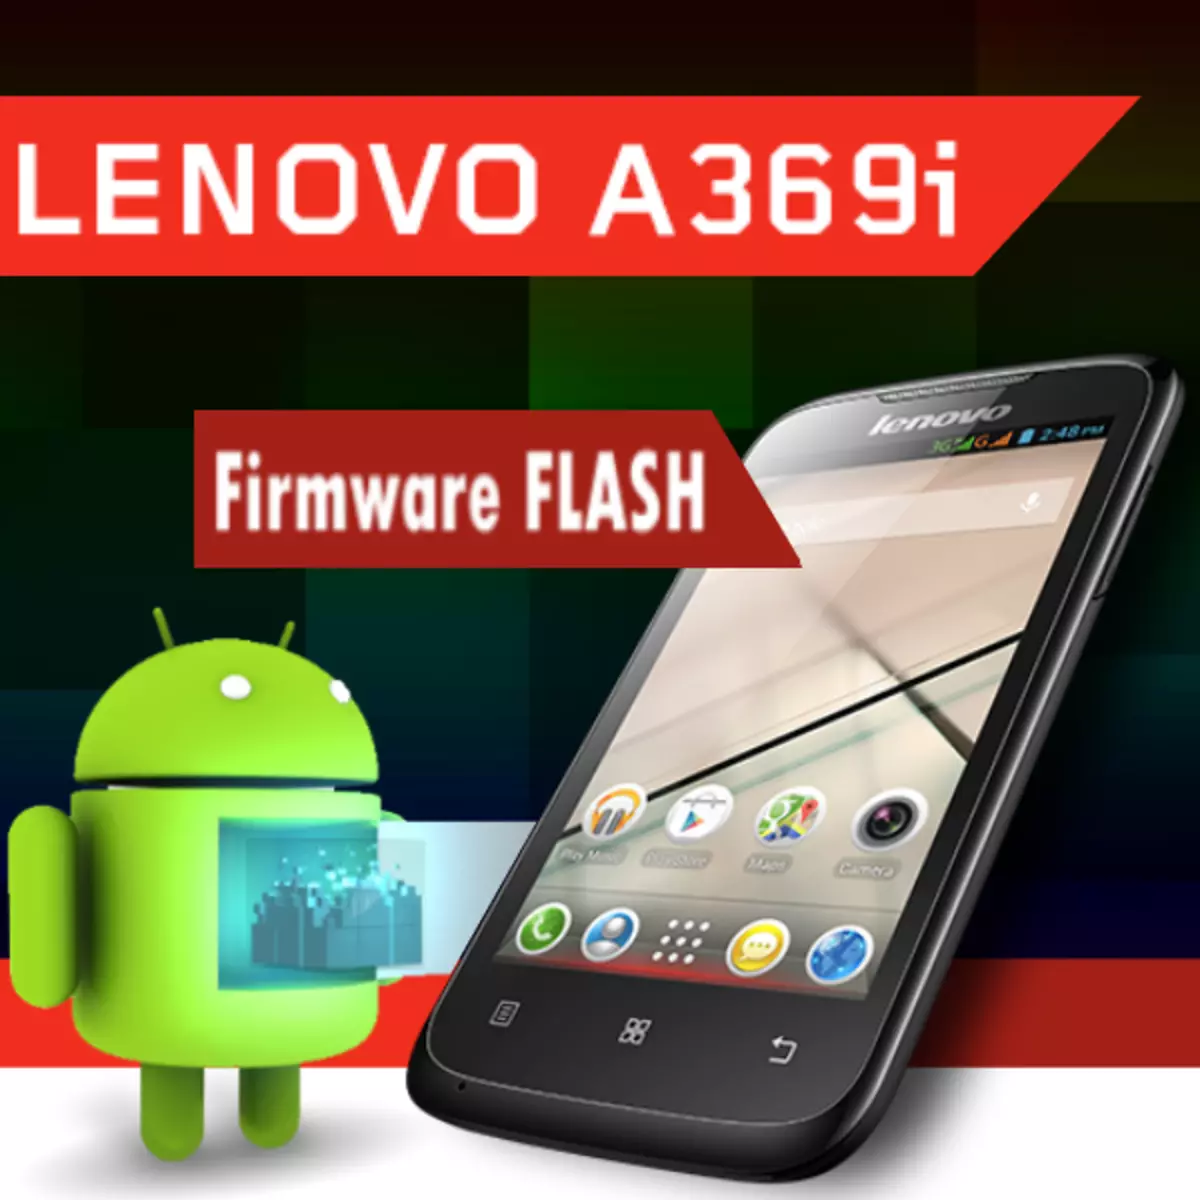 Firmware Lenovo Idephone A369i